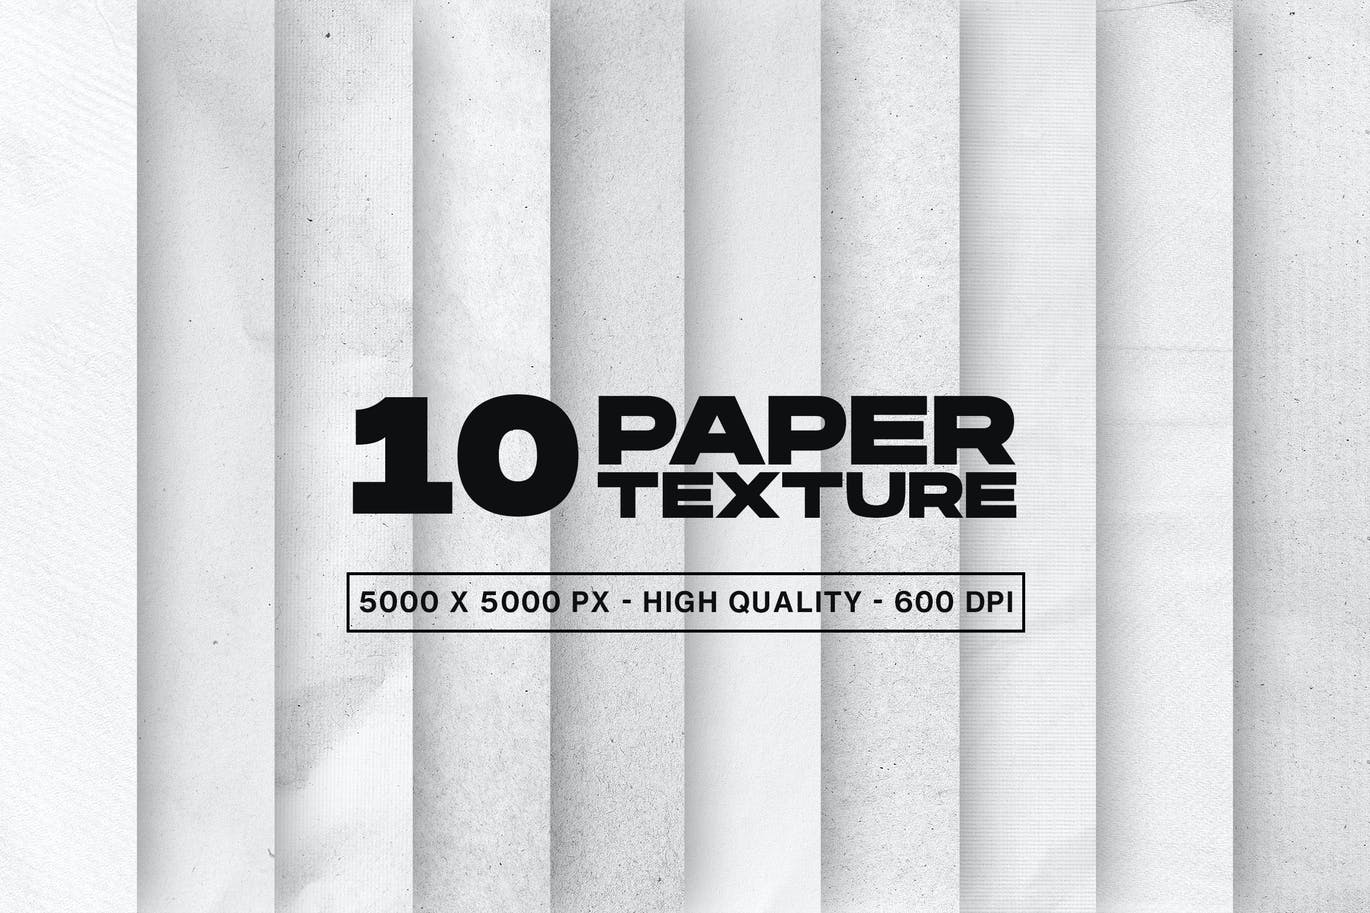 10个高分辨率纸张纹理 10 Paper Textures 图片素材 第1张